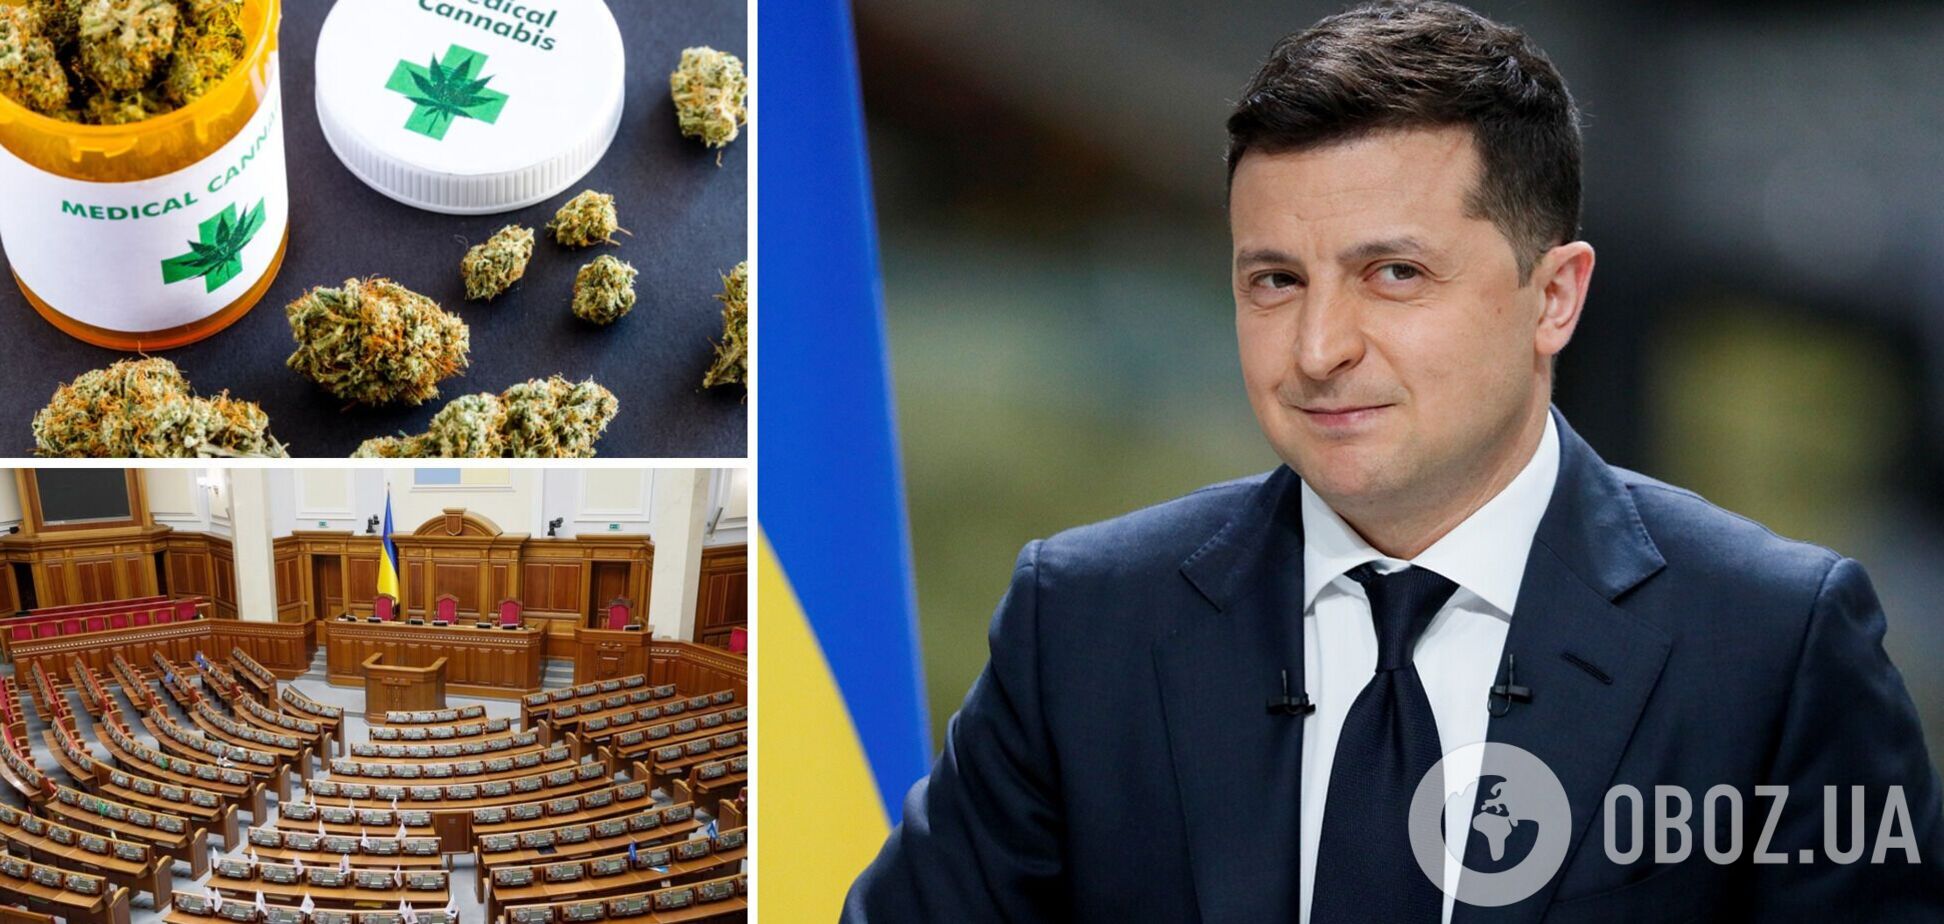 Зеленський скликає позачергове засідання ВР для легалізації медичного канабісу